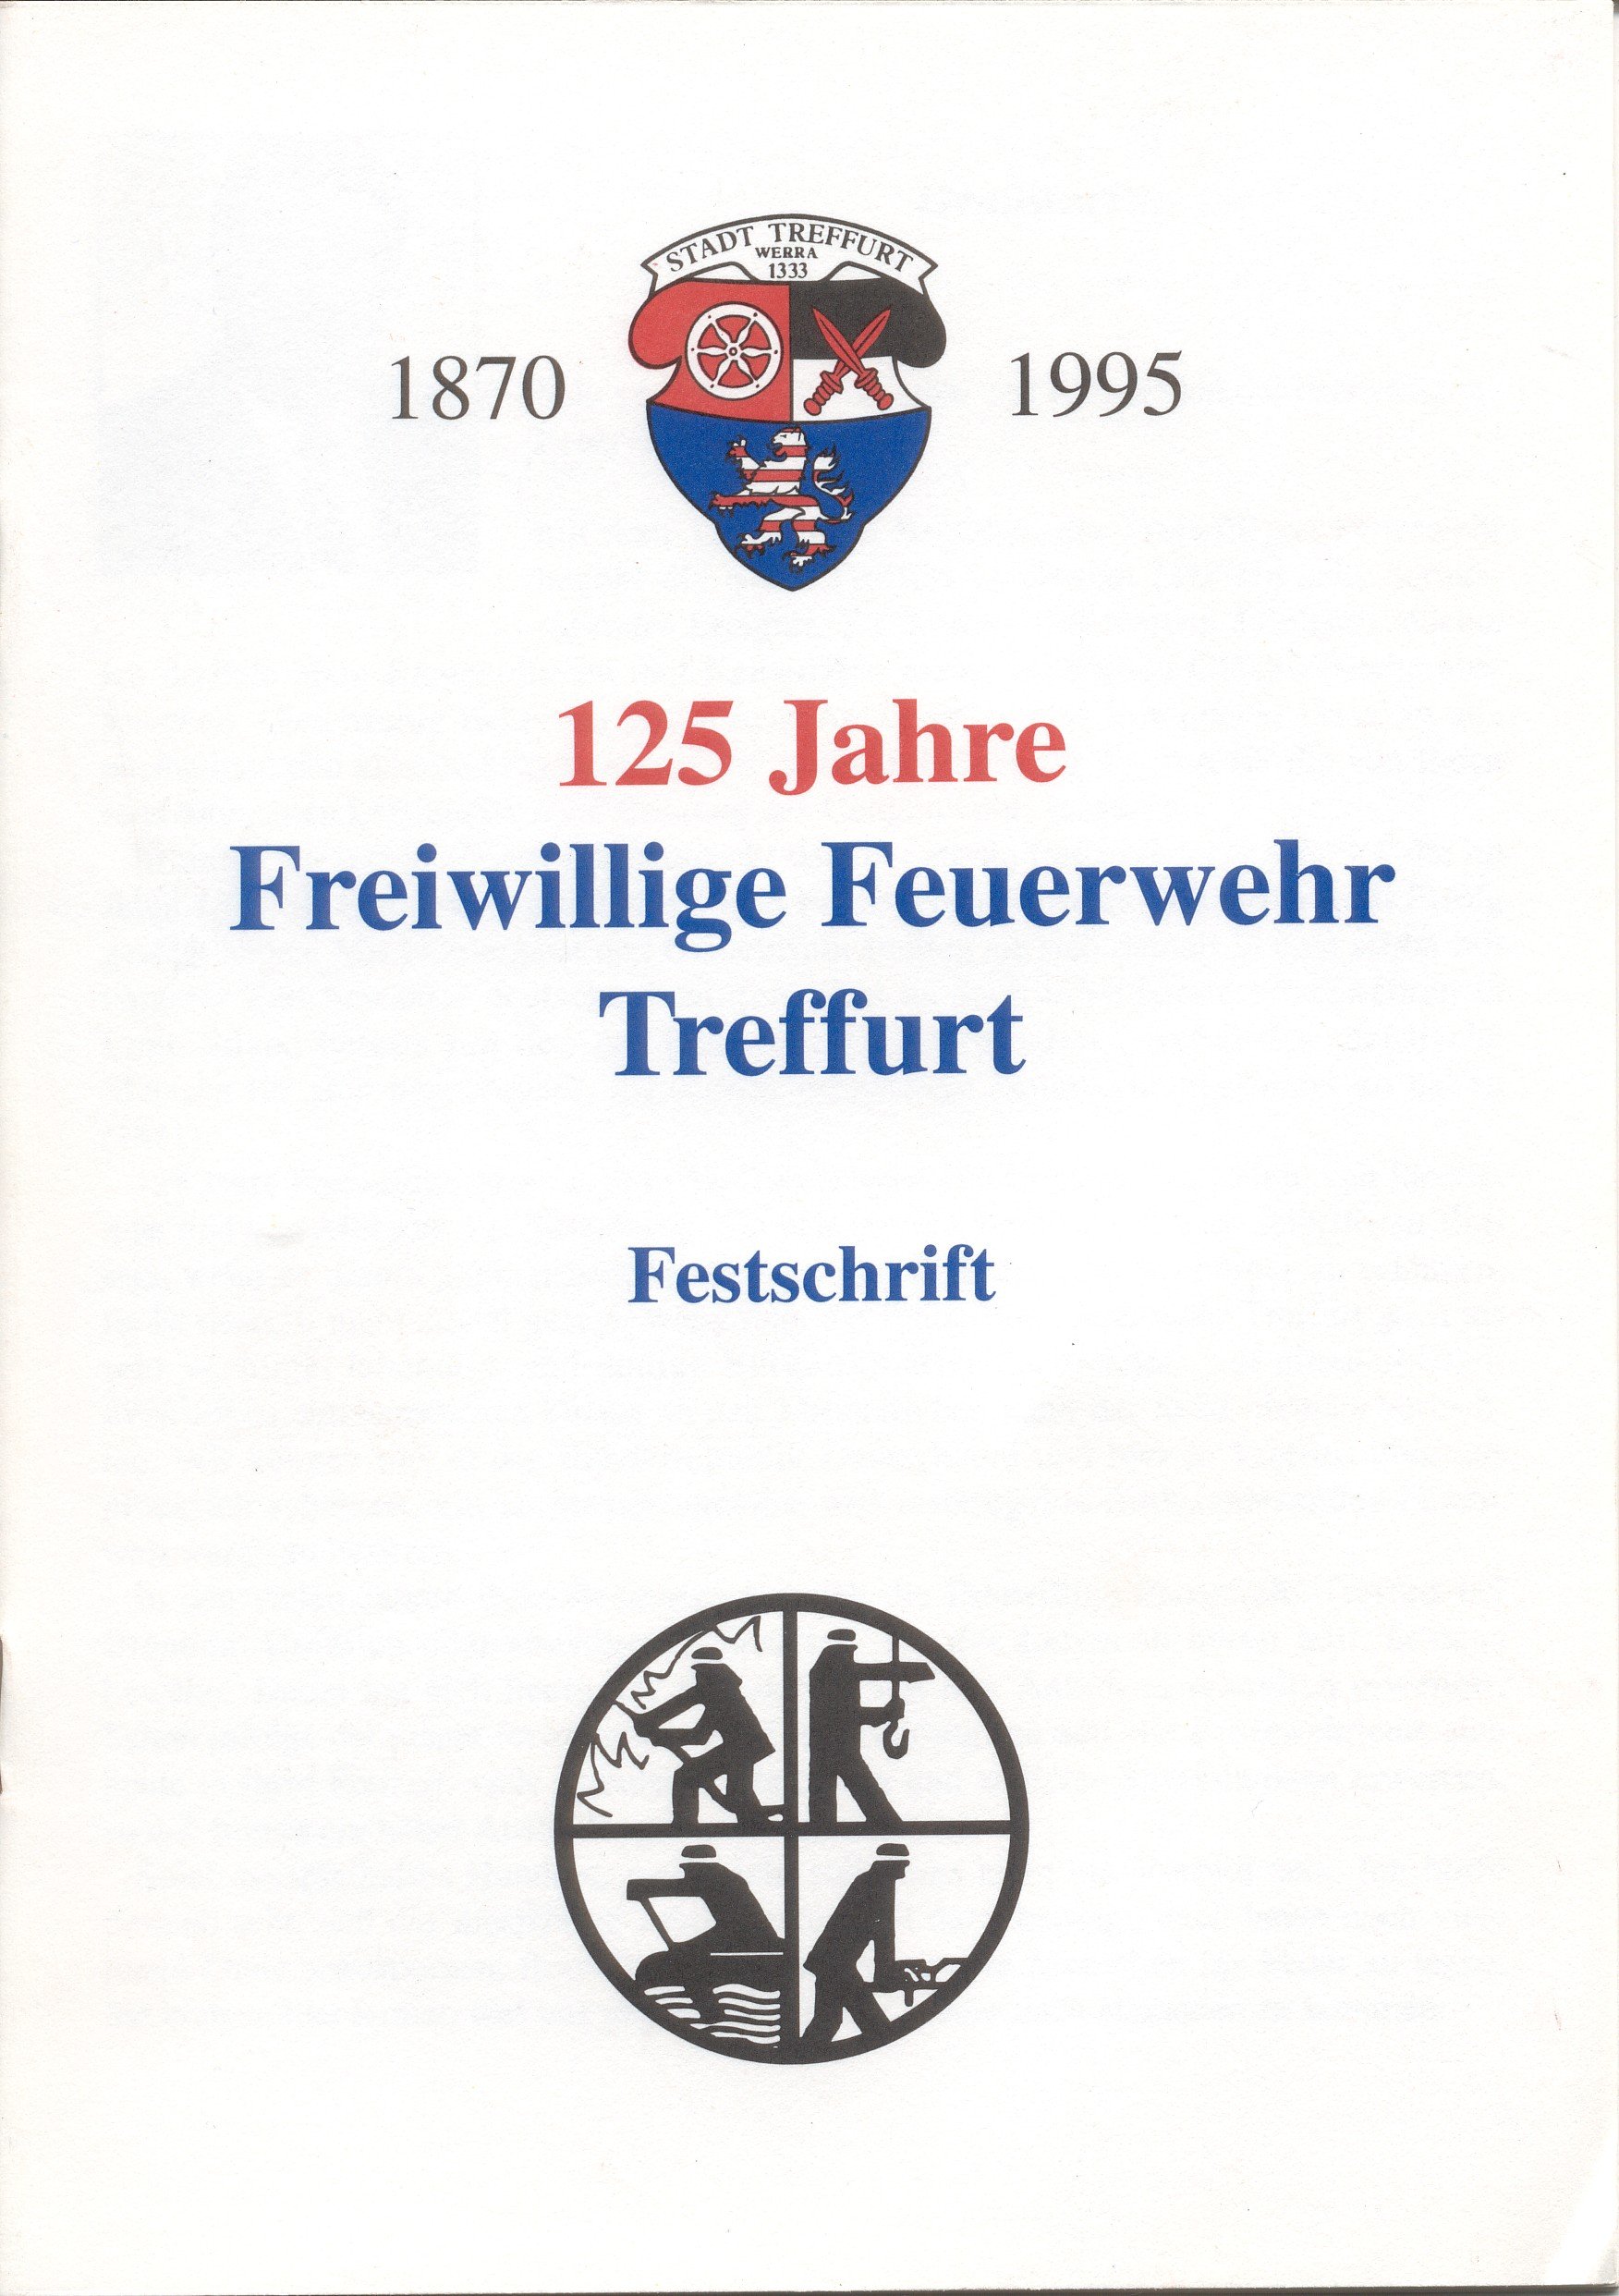 Festschrift FF Treffurt (Feuerwehrmuseum Grethen CC BY-NC-SA)